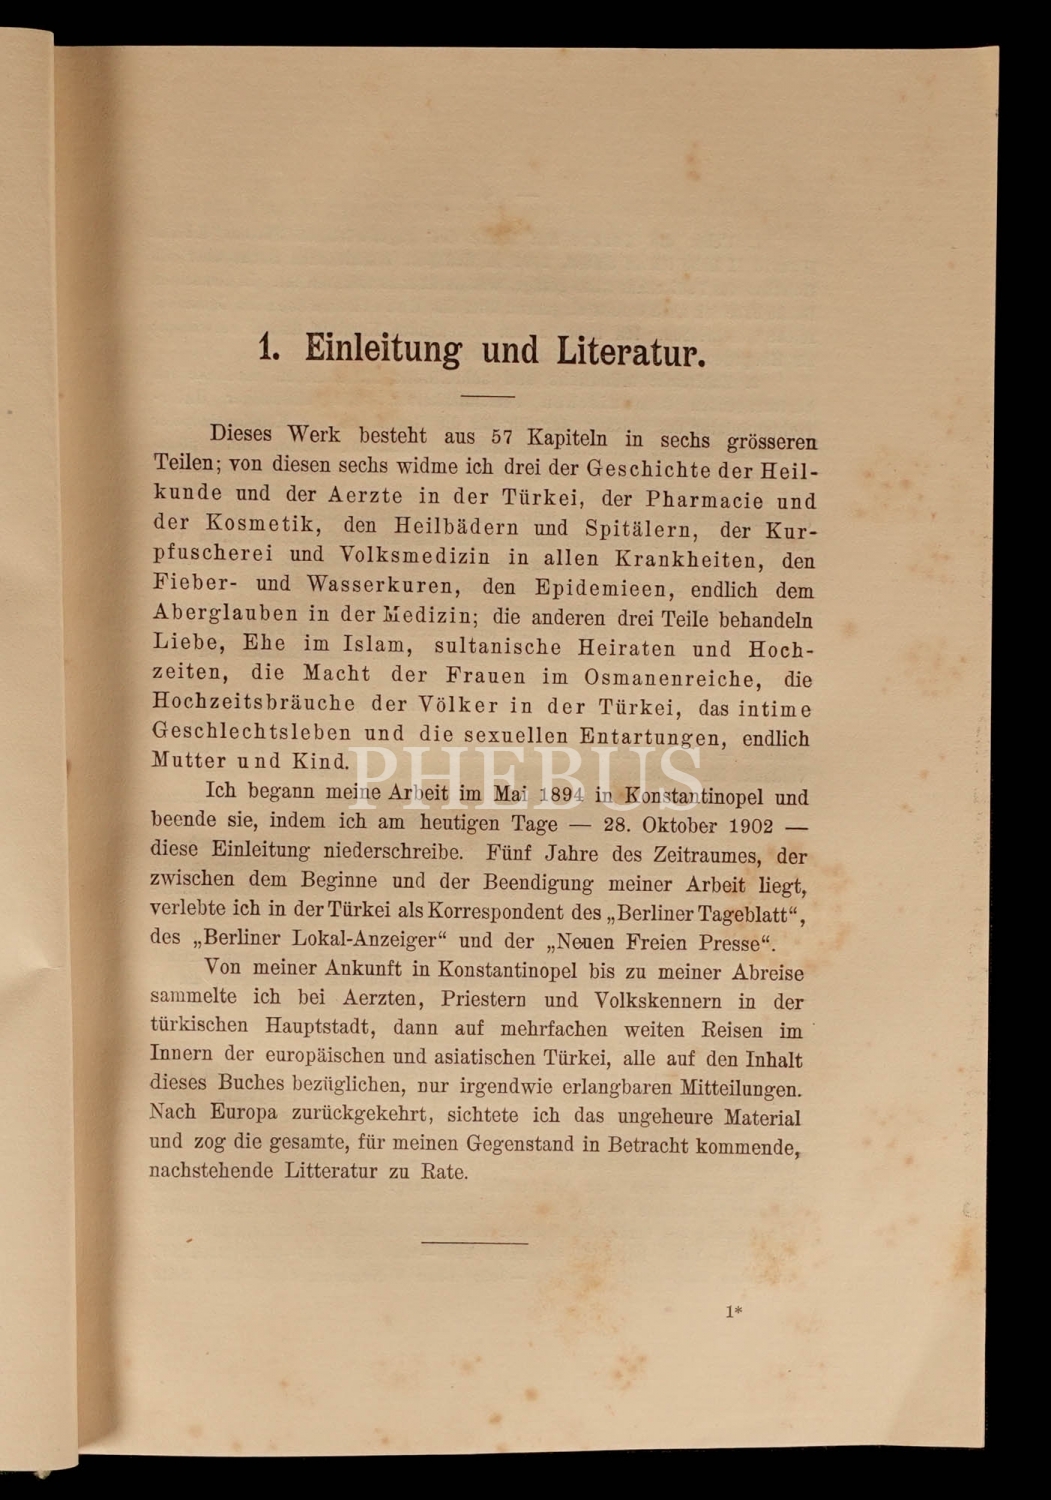 MEDIZIN, ABERGLAUBE UND GESCHLECHTSLEBEN İN DER TÜRKEİ, Bernhard Stern, 1903, Verlag Von H. Barsdorf (Berlin), 437 sayfa, 16x24 cm...